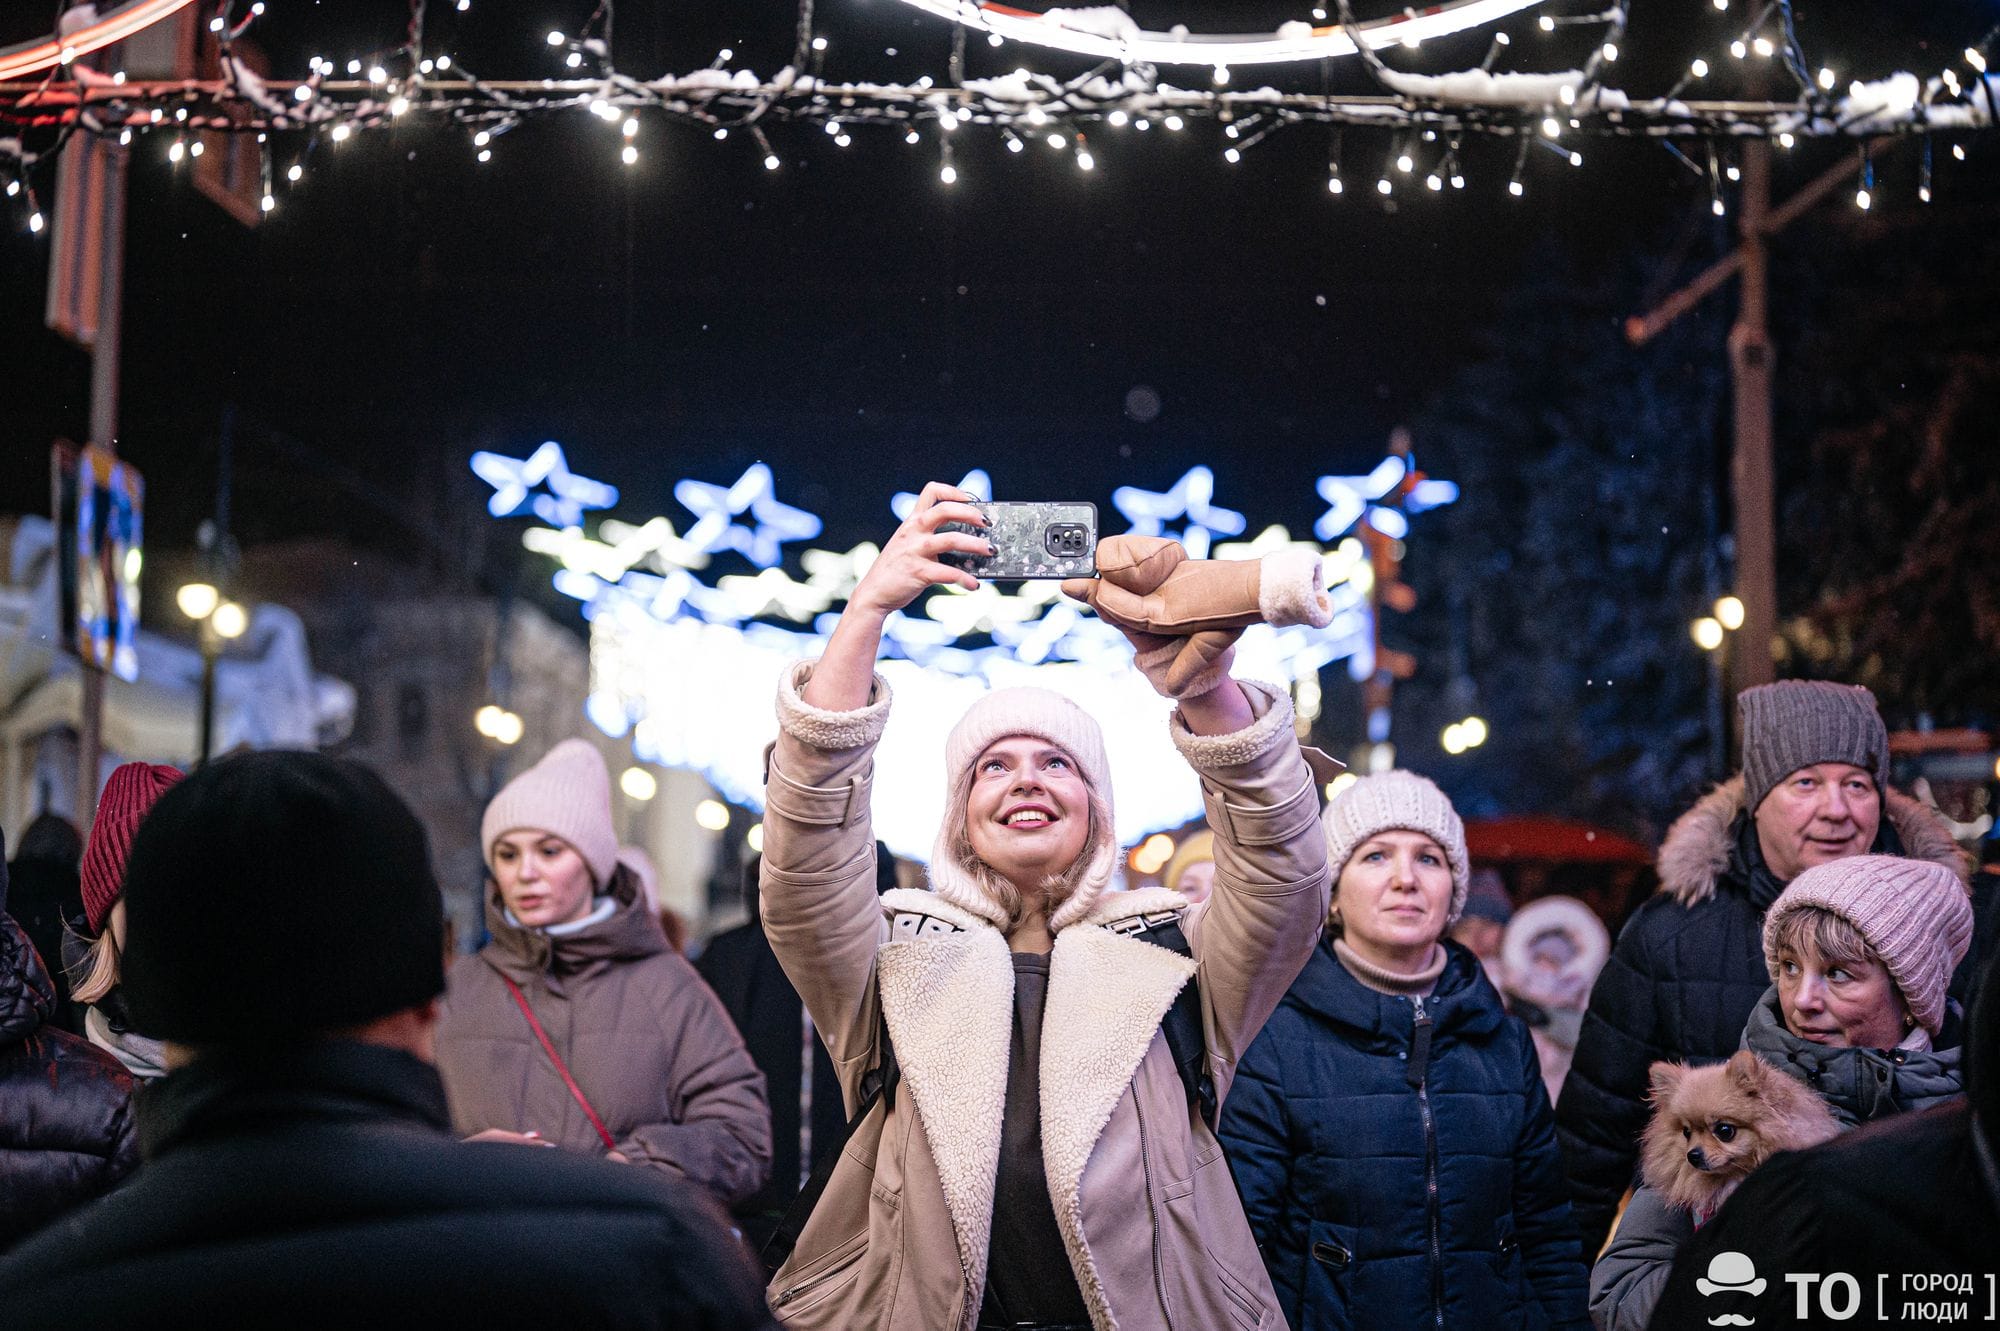 Путешествия, Томские новости, томск путешествия сибирь туризм куда поехать места для отдыха спонтанные поездки Сибирь стала одним из самых популярных мест для спонтанных поездок в новогодние выходные